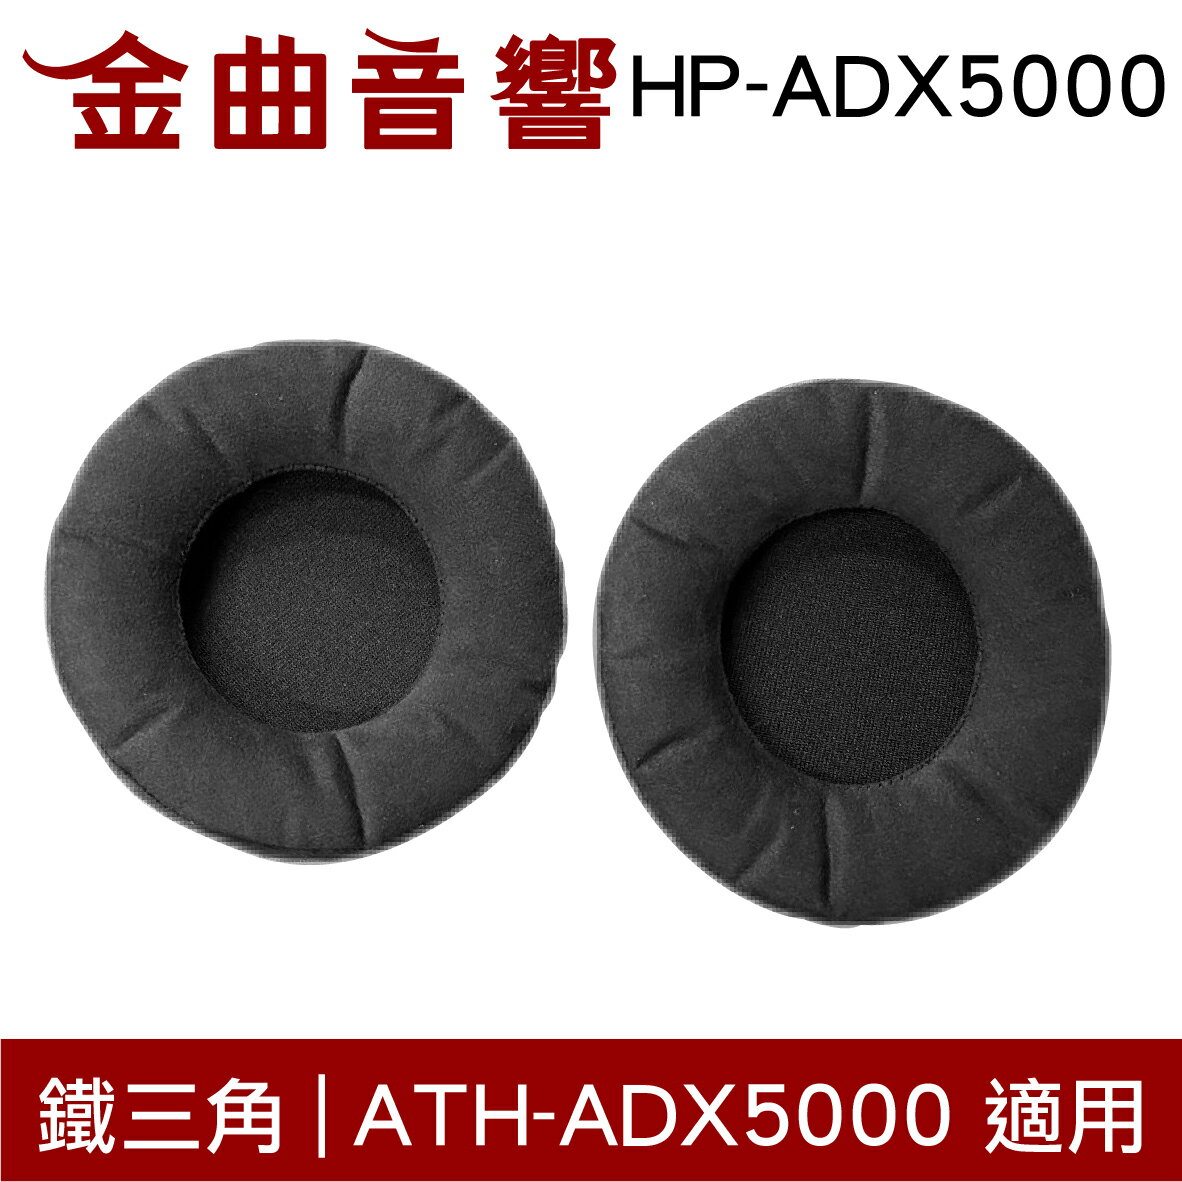 鐵三角 HP-ADX5000 替換耳罩 一對 ATH-ADX5000 適用 | 金曲音響